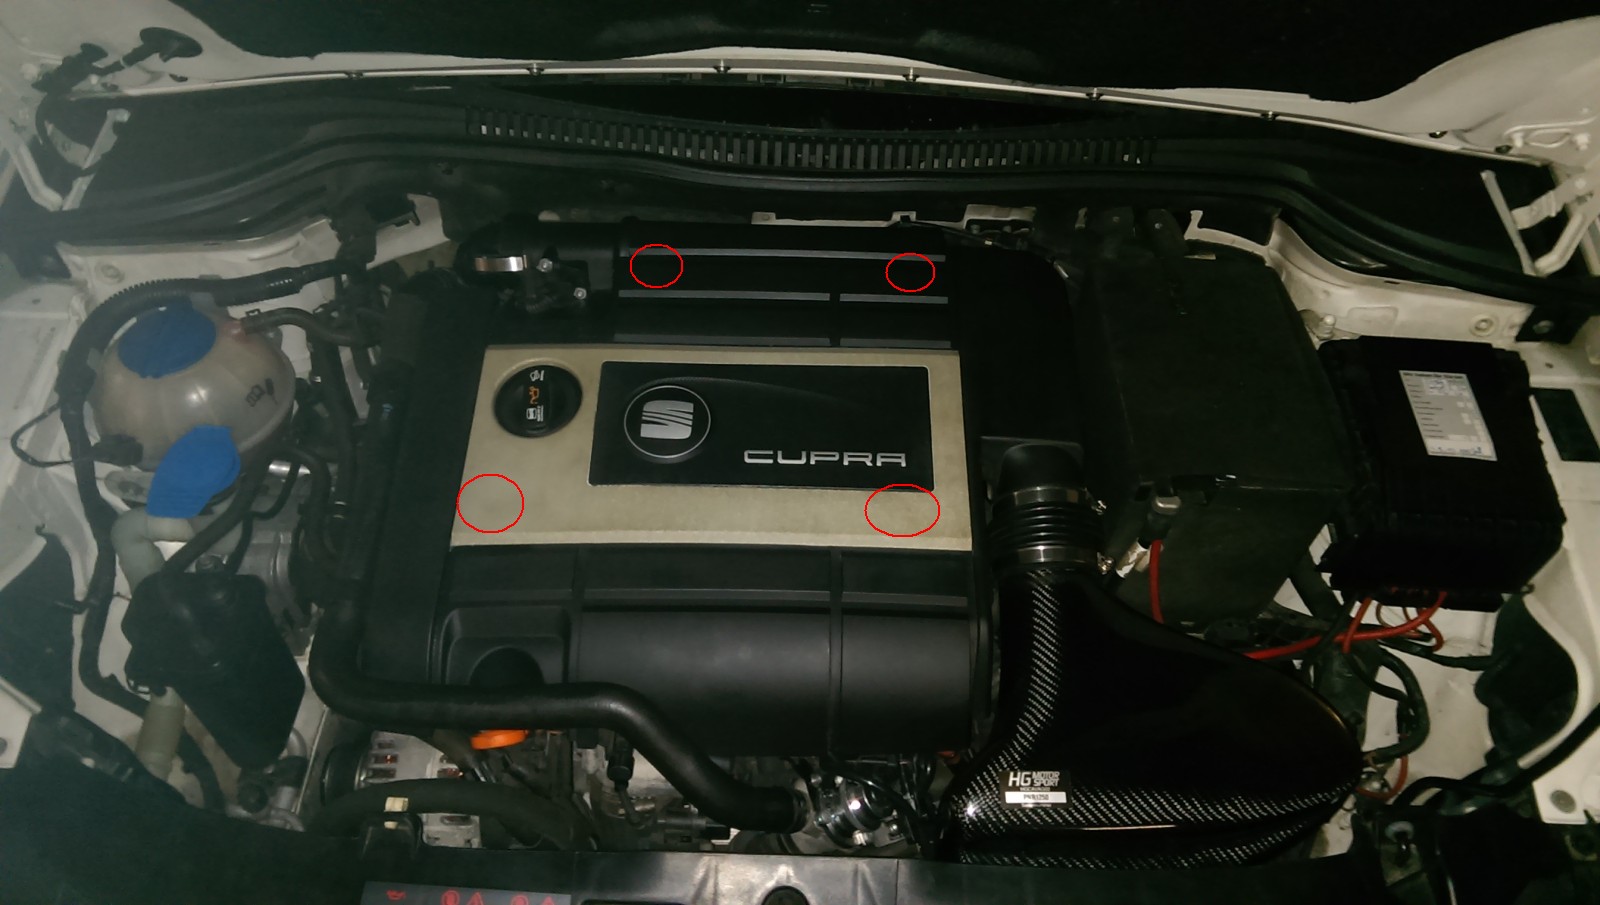 Motorraum Abdeckung - Startseite Forum Auto Audi TT